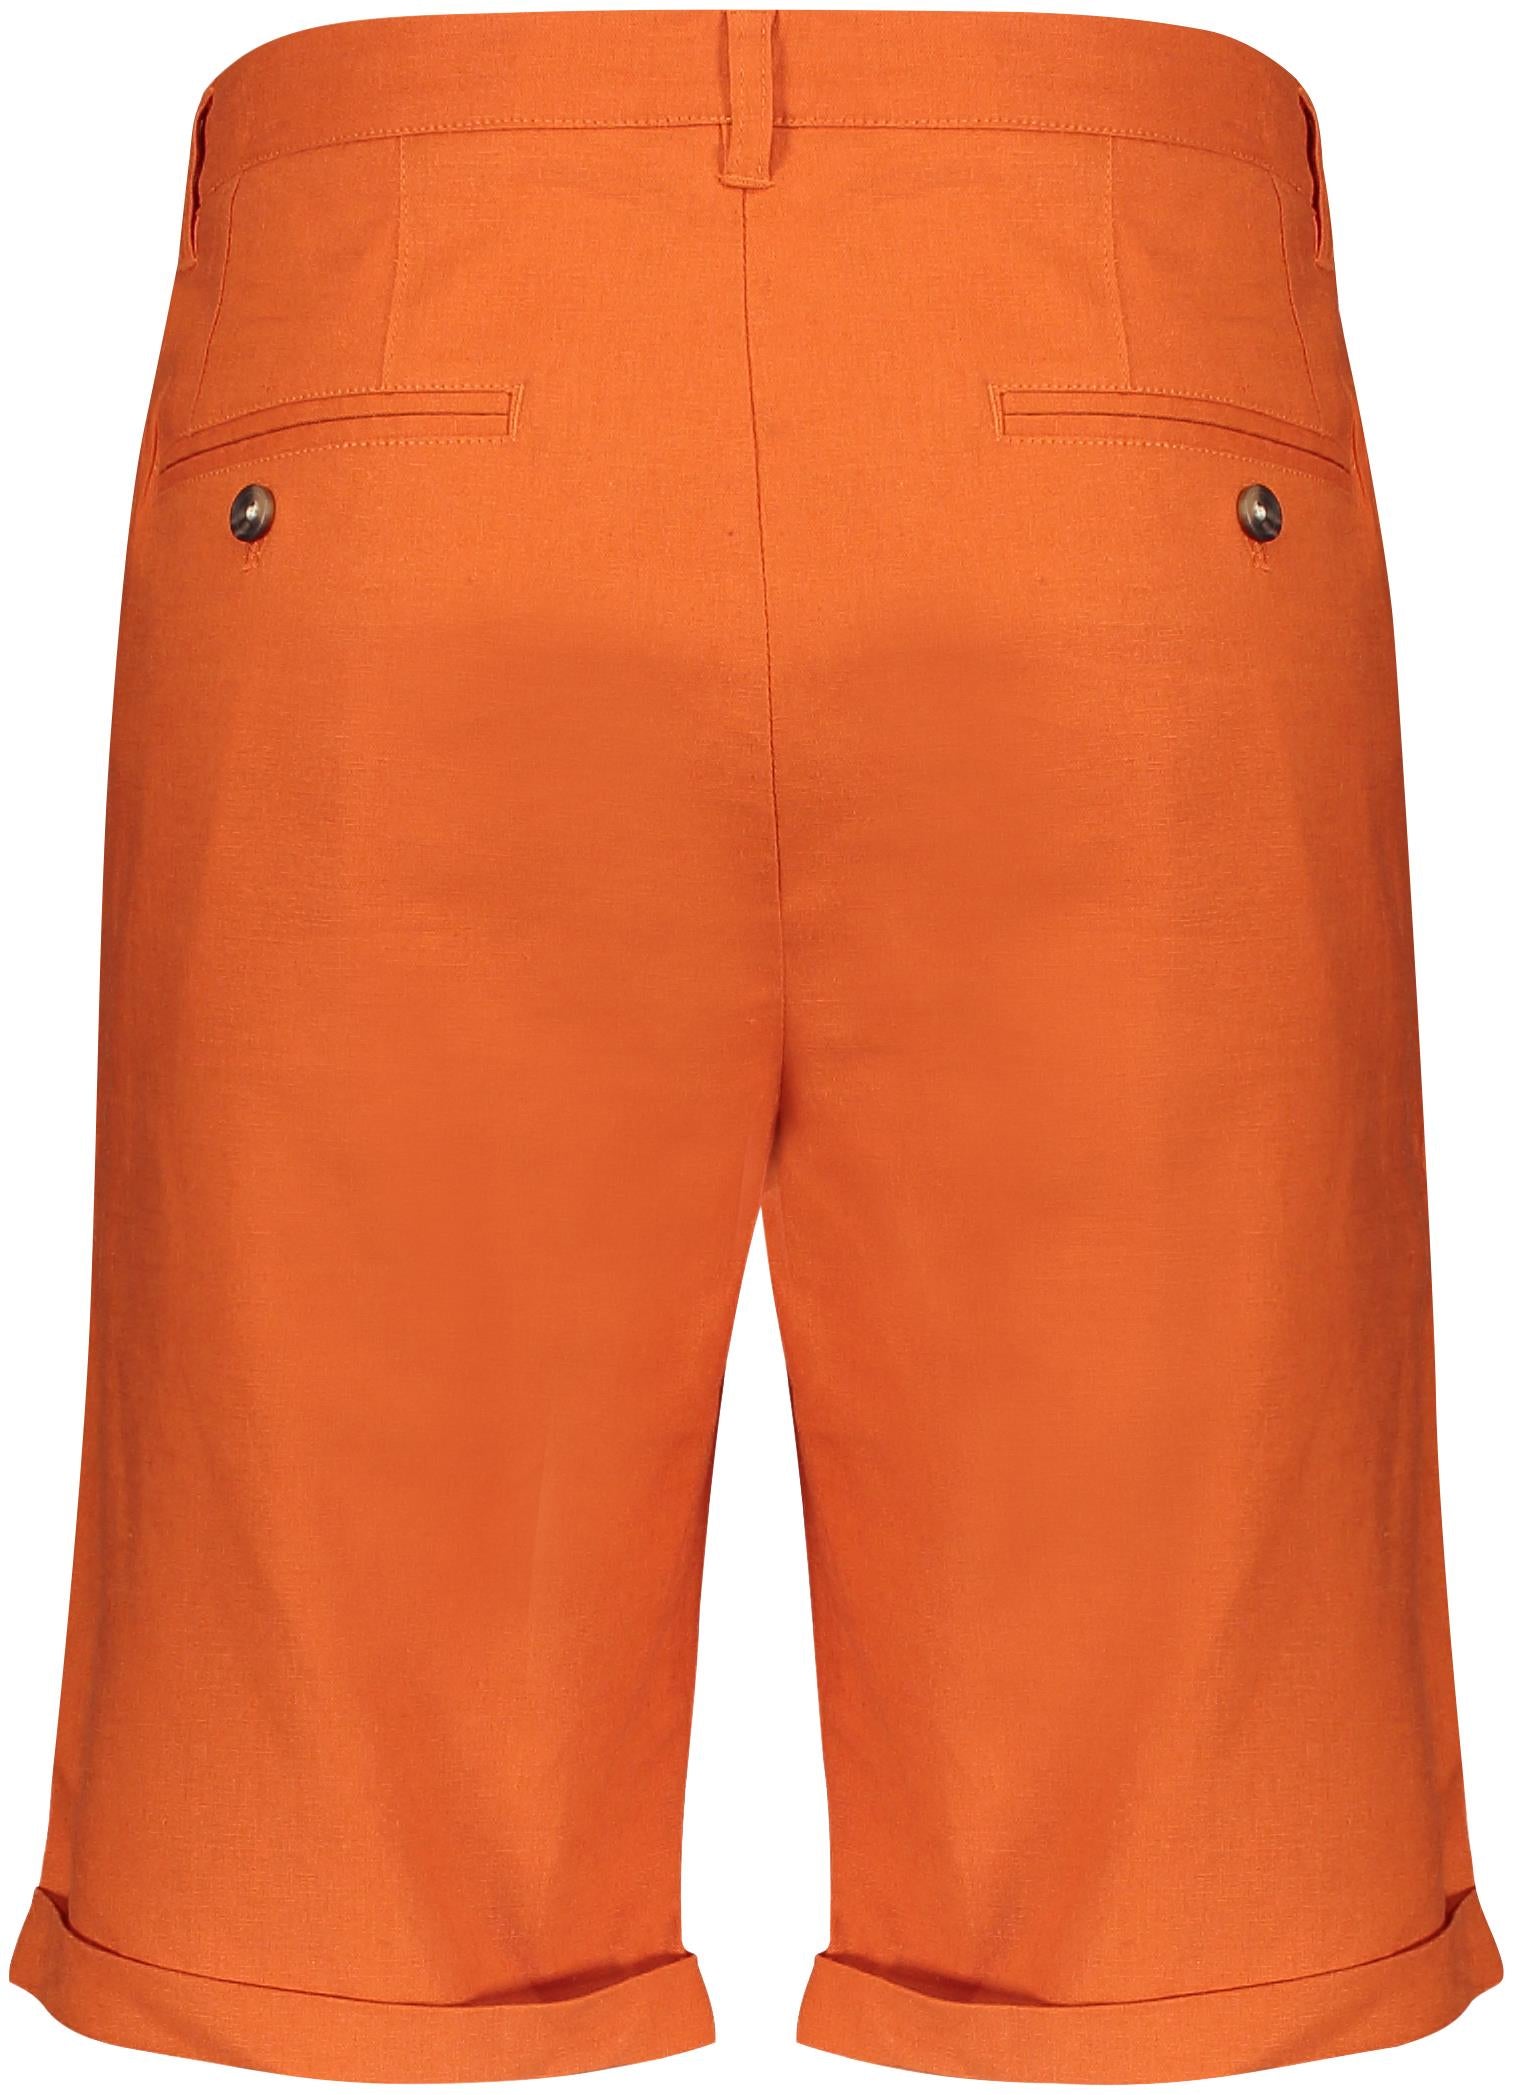 Felix Shorts - Burnt Orange